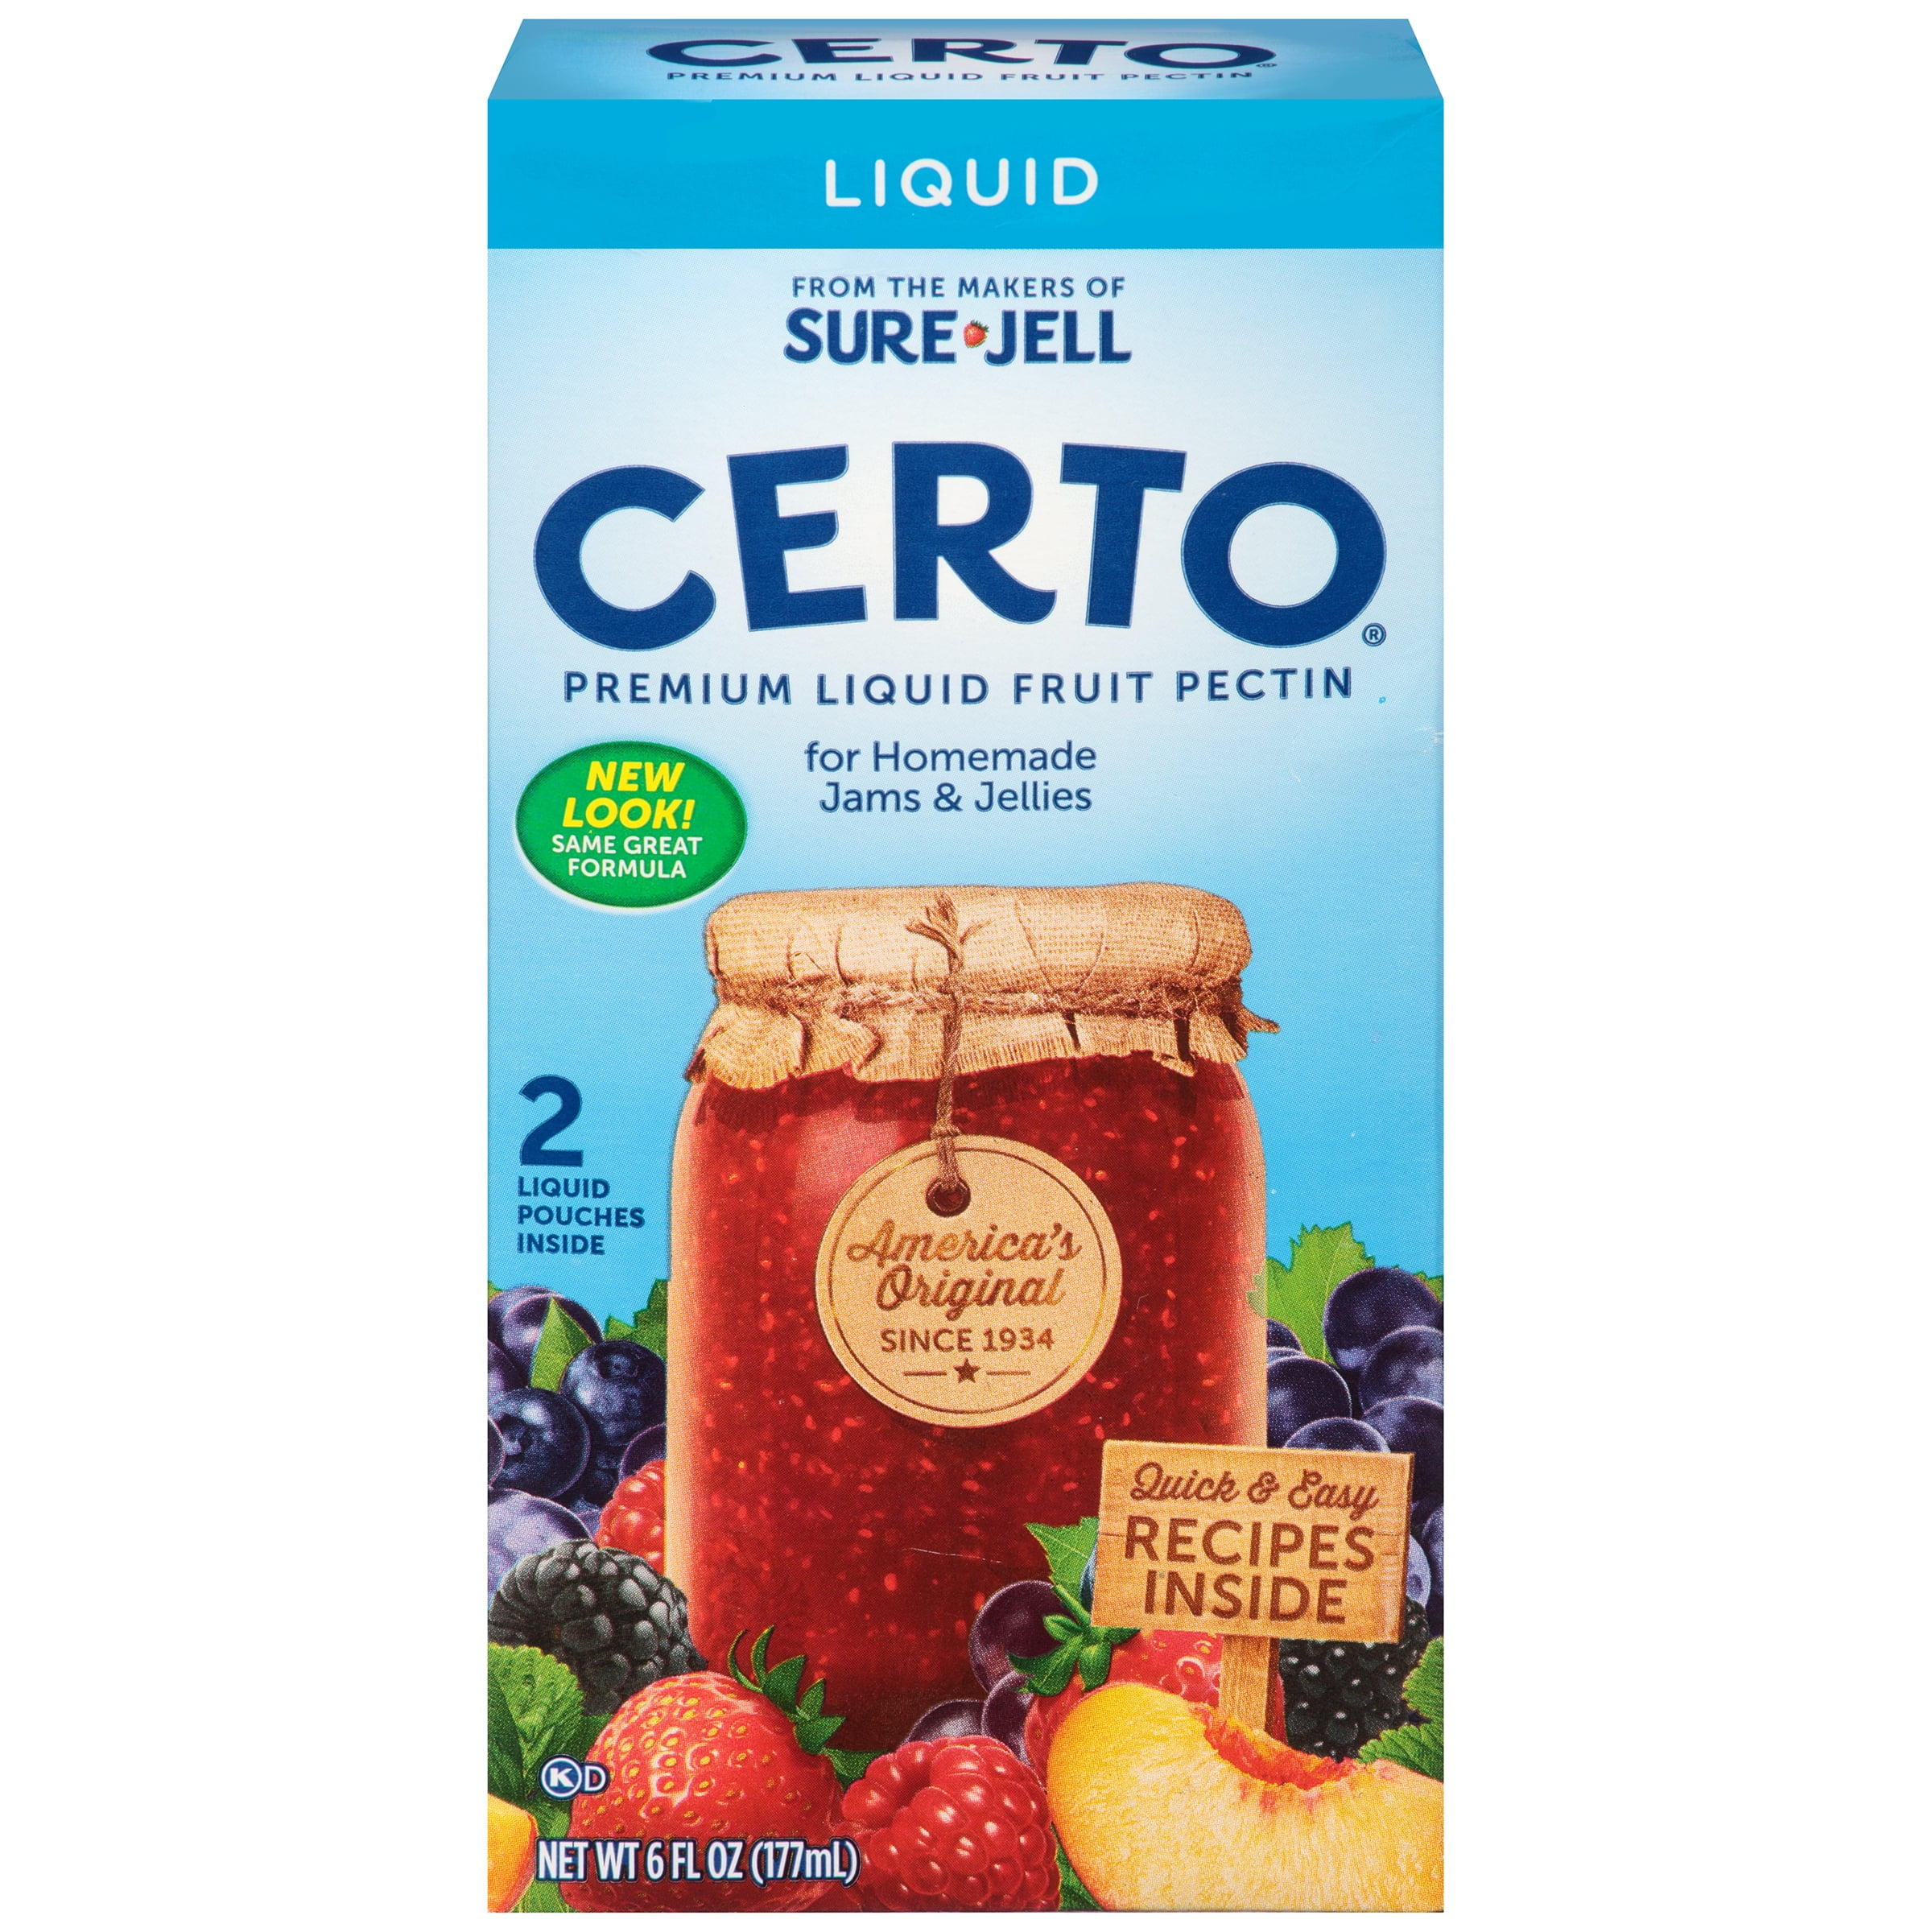 Buy Certo Premium Liquid Fruit Pectin, 6.0 oz Box (Pack of 4) at Walmart.co...